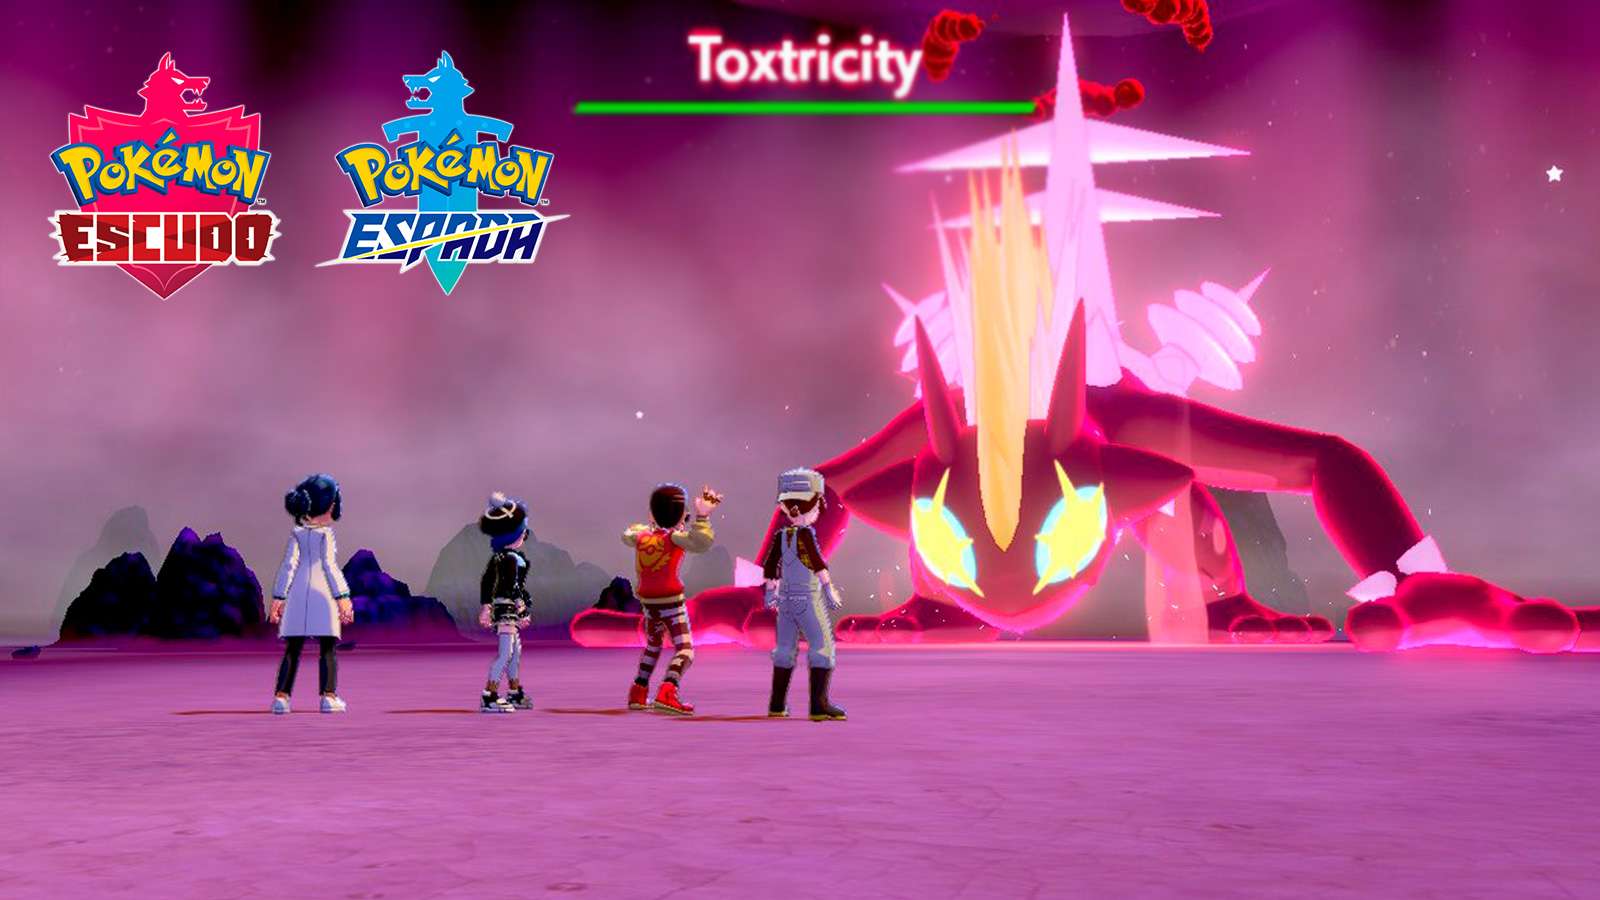 Toxtricity gigamax en raid de pokémon espada y escudo